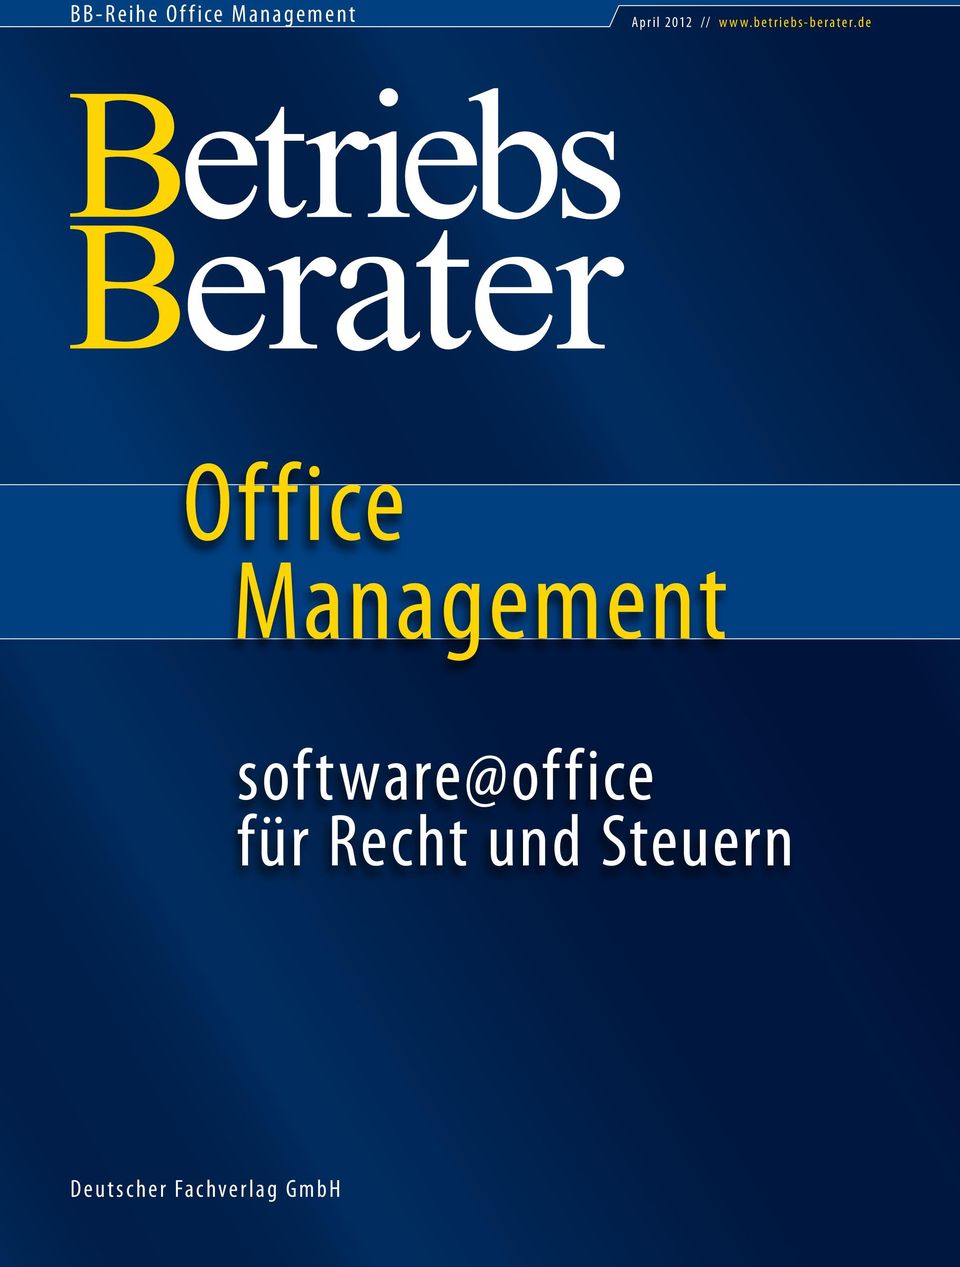 de Office Management software@office